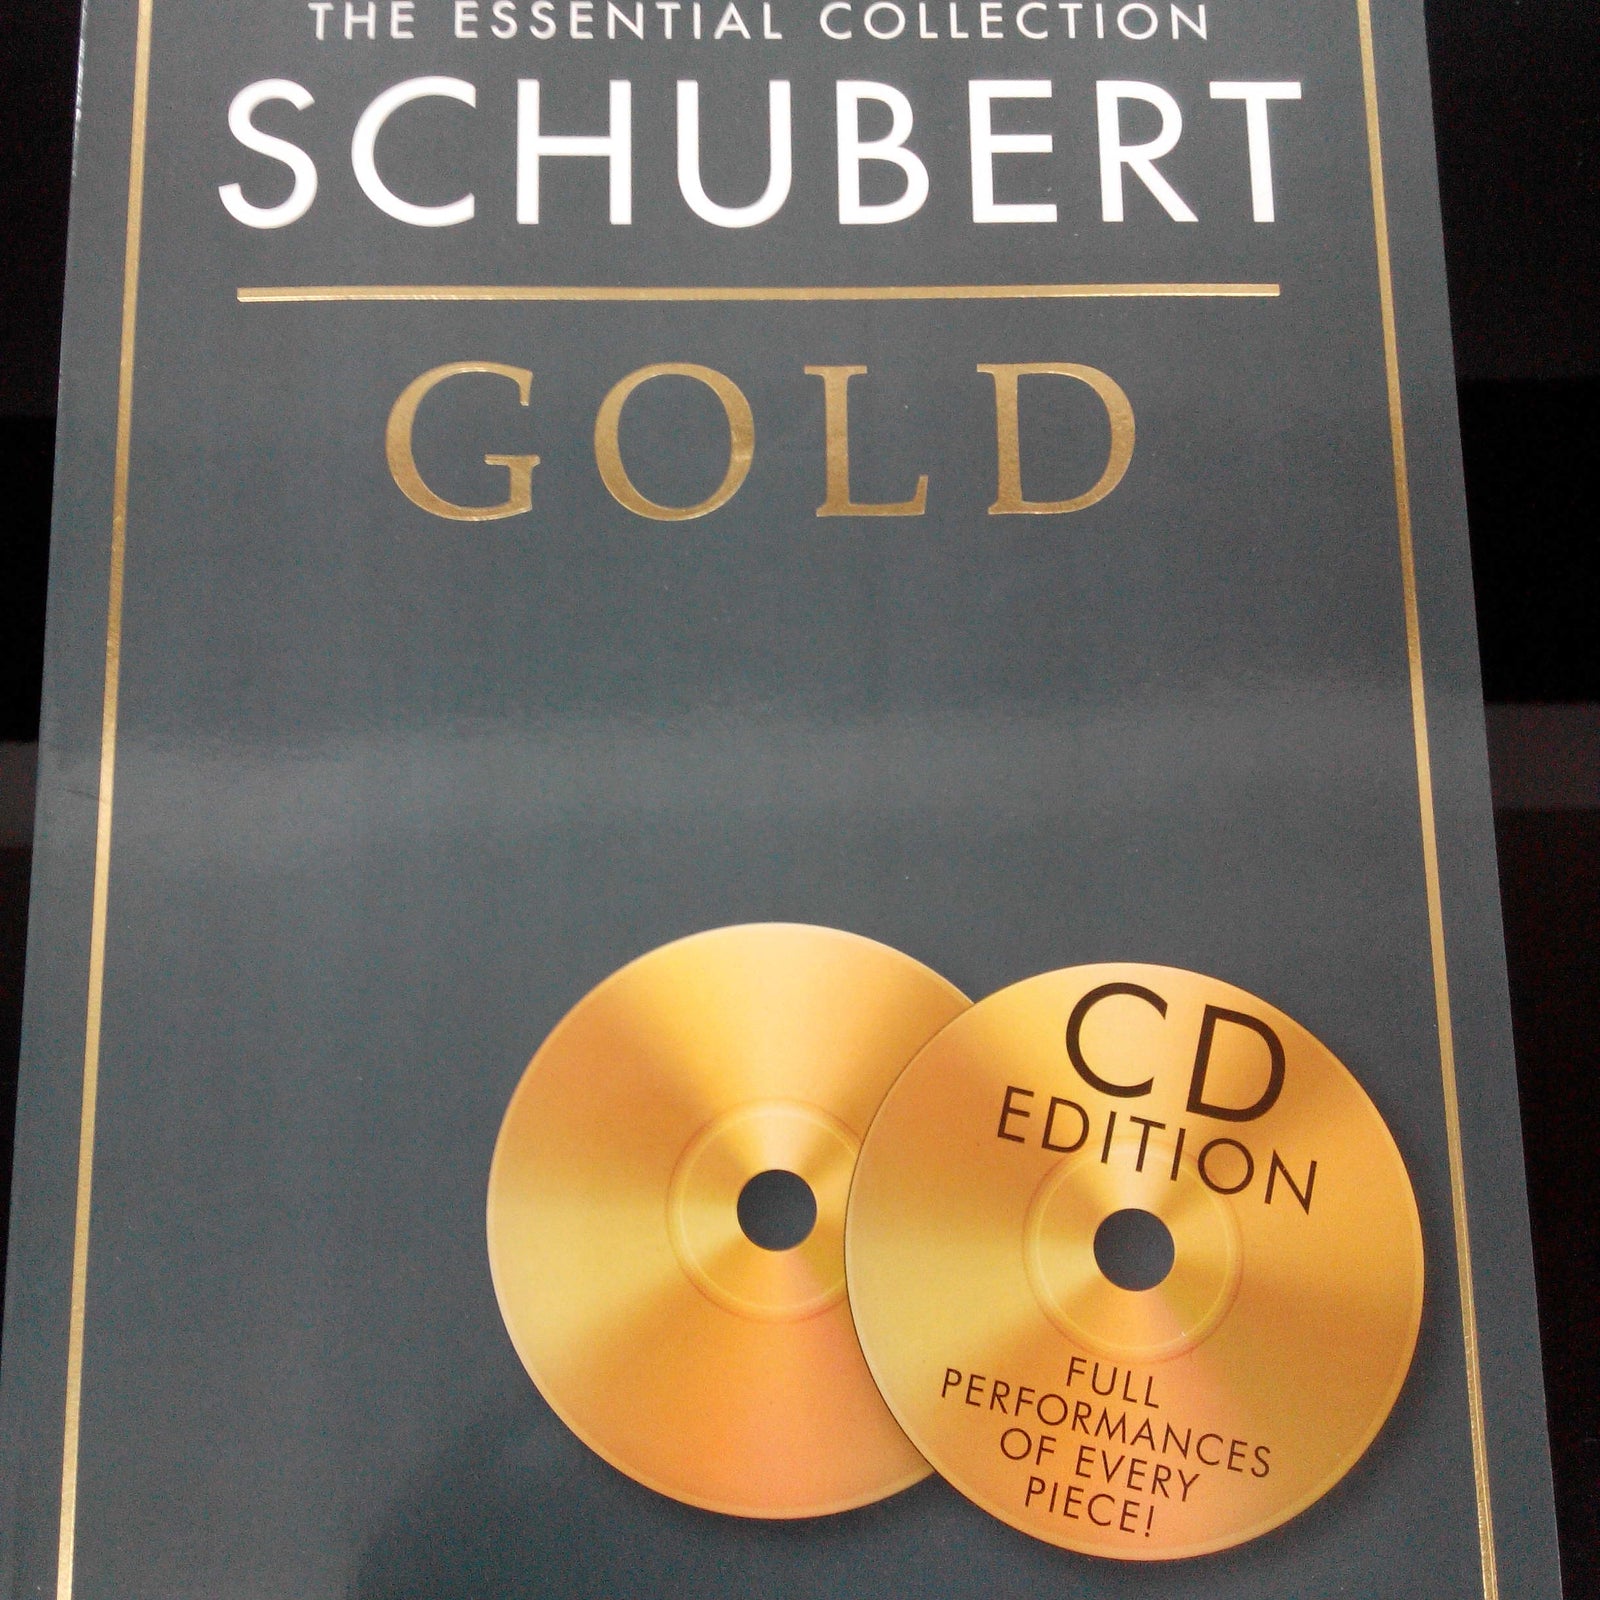 MS Ess Coll Schubert Gold